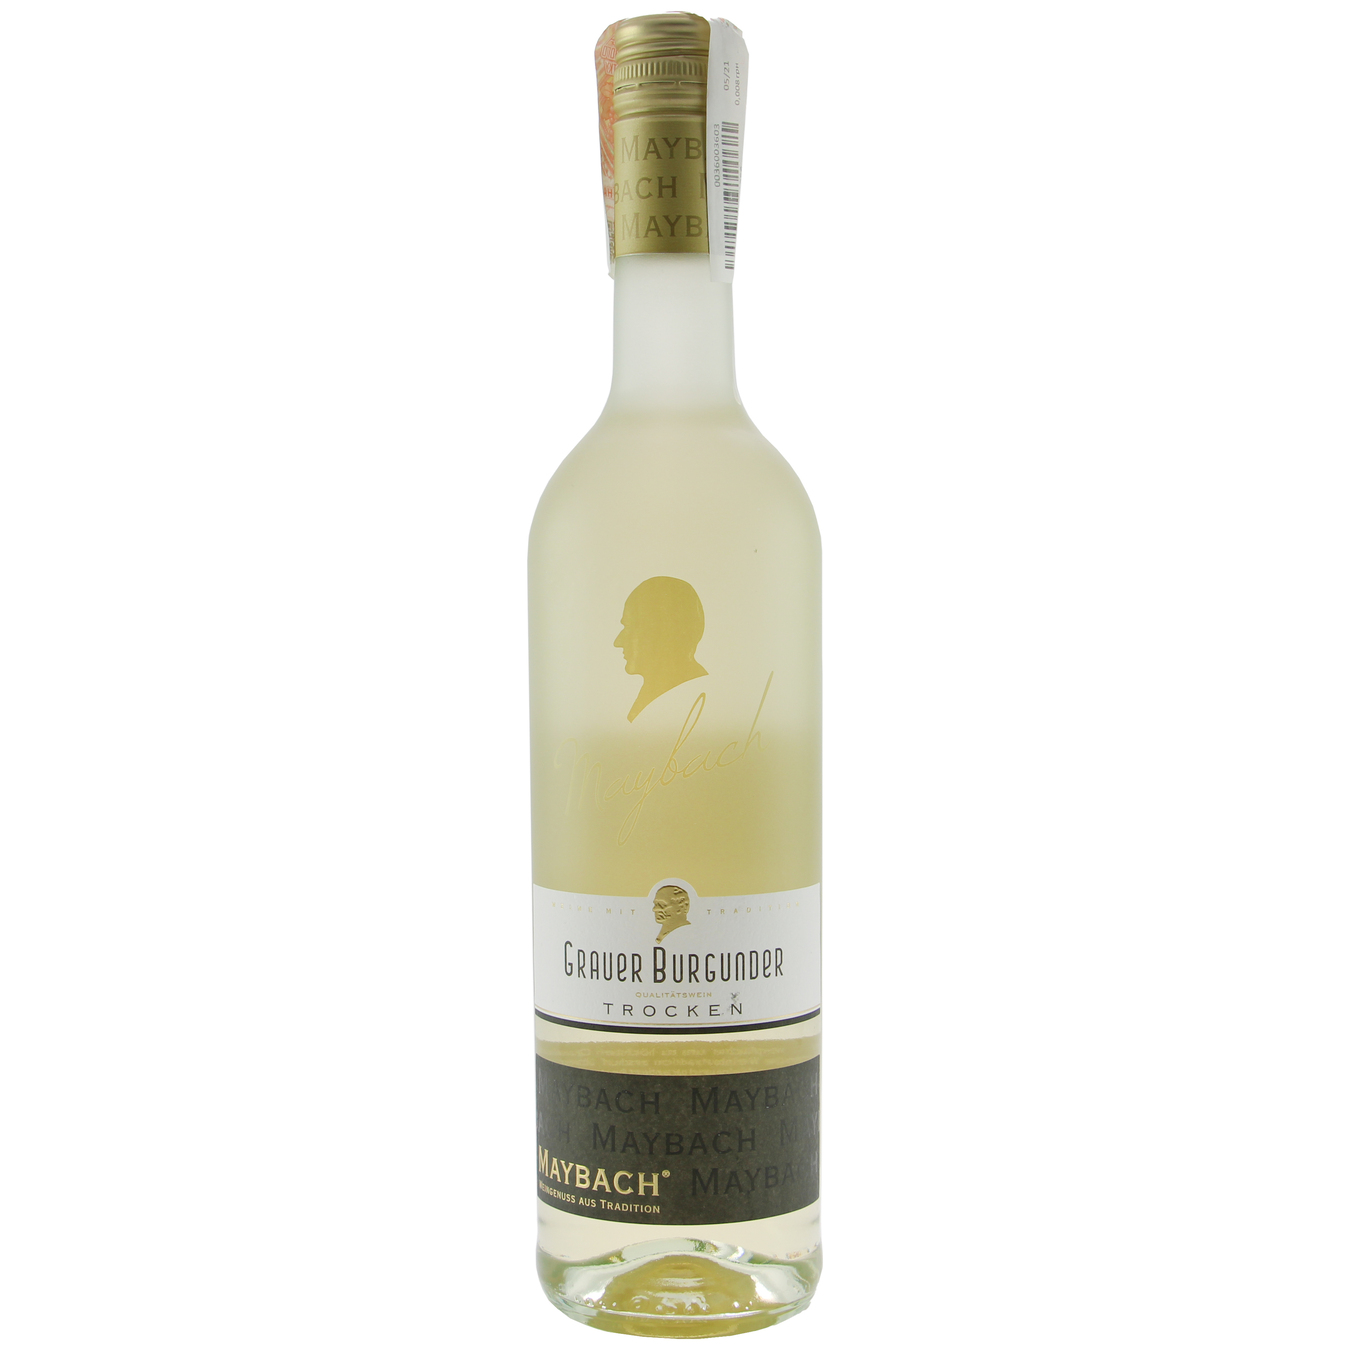 Maybach Grauer Burgunder Trocken white dry wine 12% 0,75l